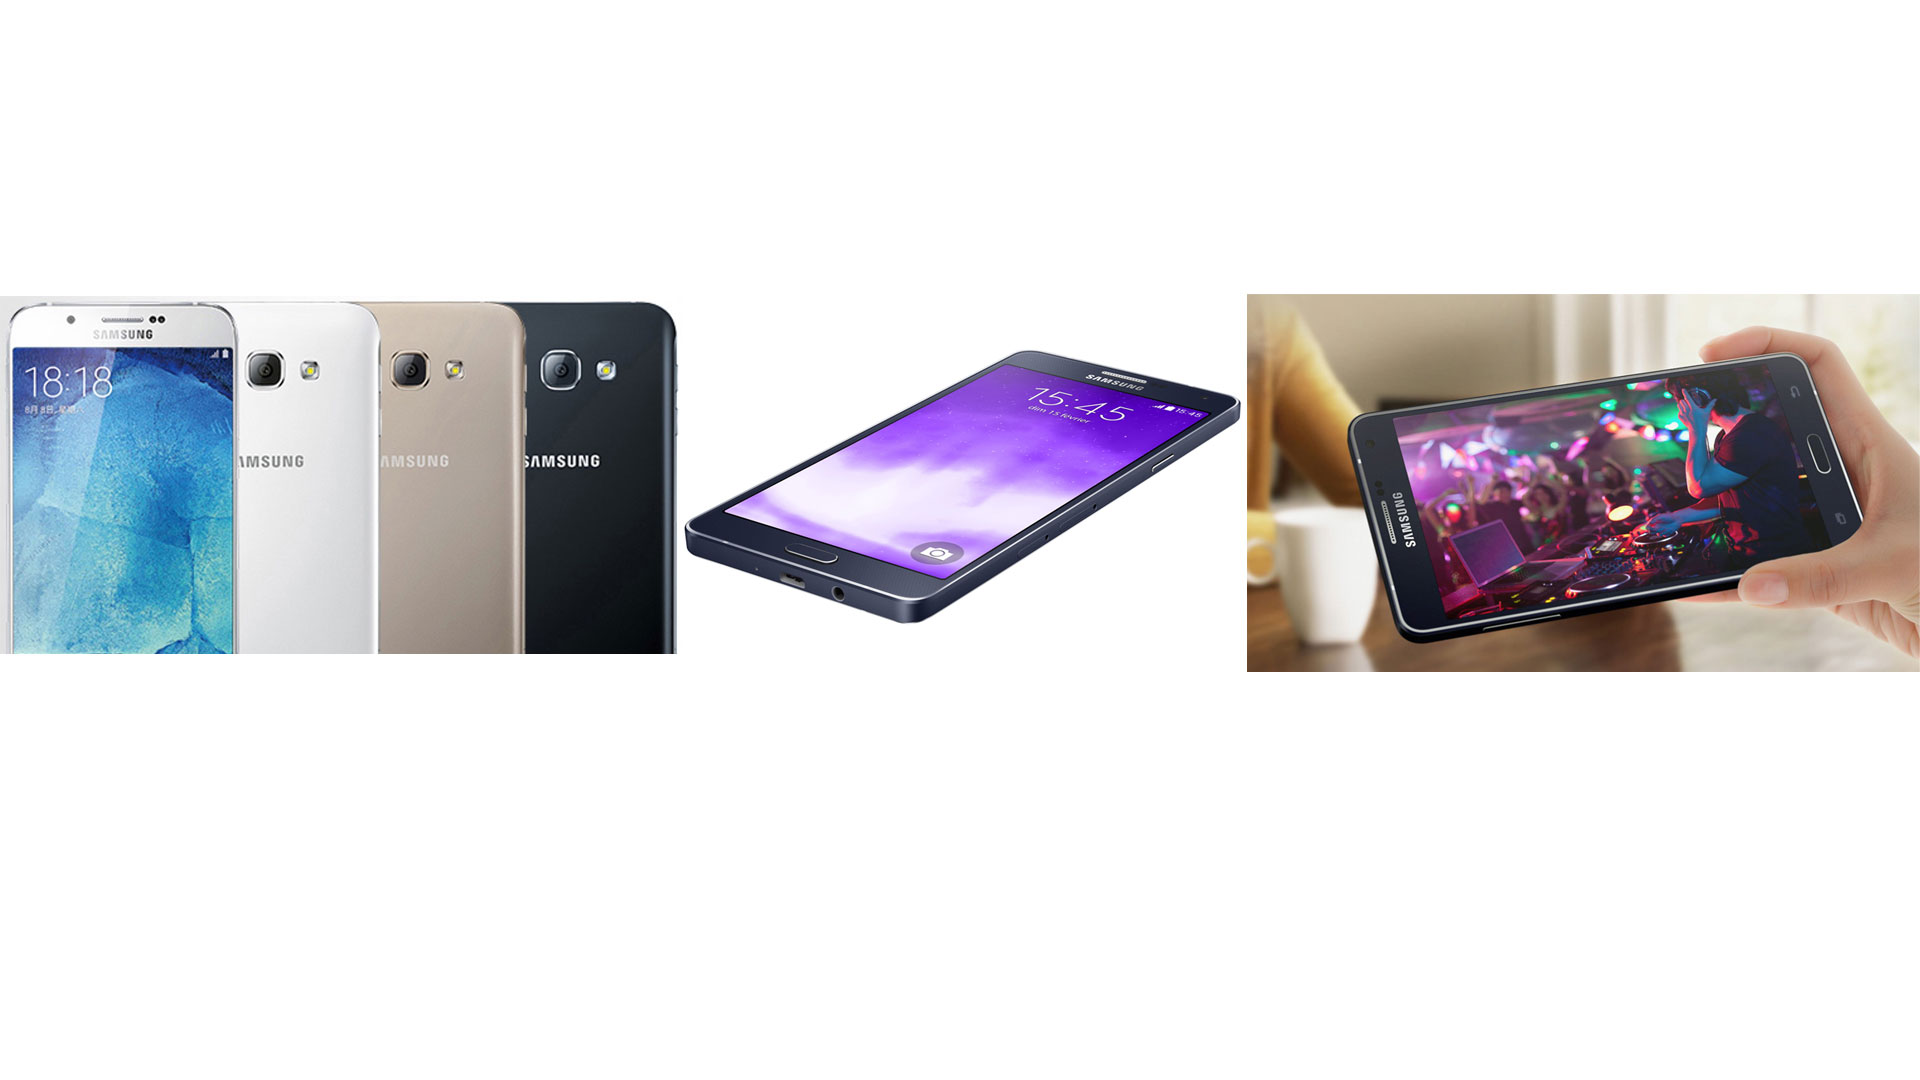 Cuenta con una carcasa metálica, muy parecida a sus últimos modelos de smartphones, tales como el Galaxy S6 y S6 Edge, los Galaxy A7 y Alpha